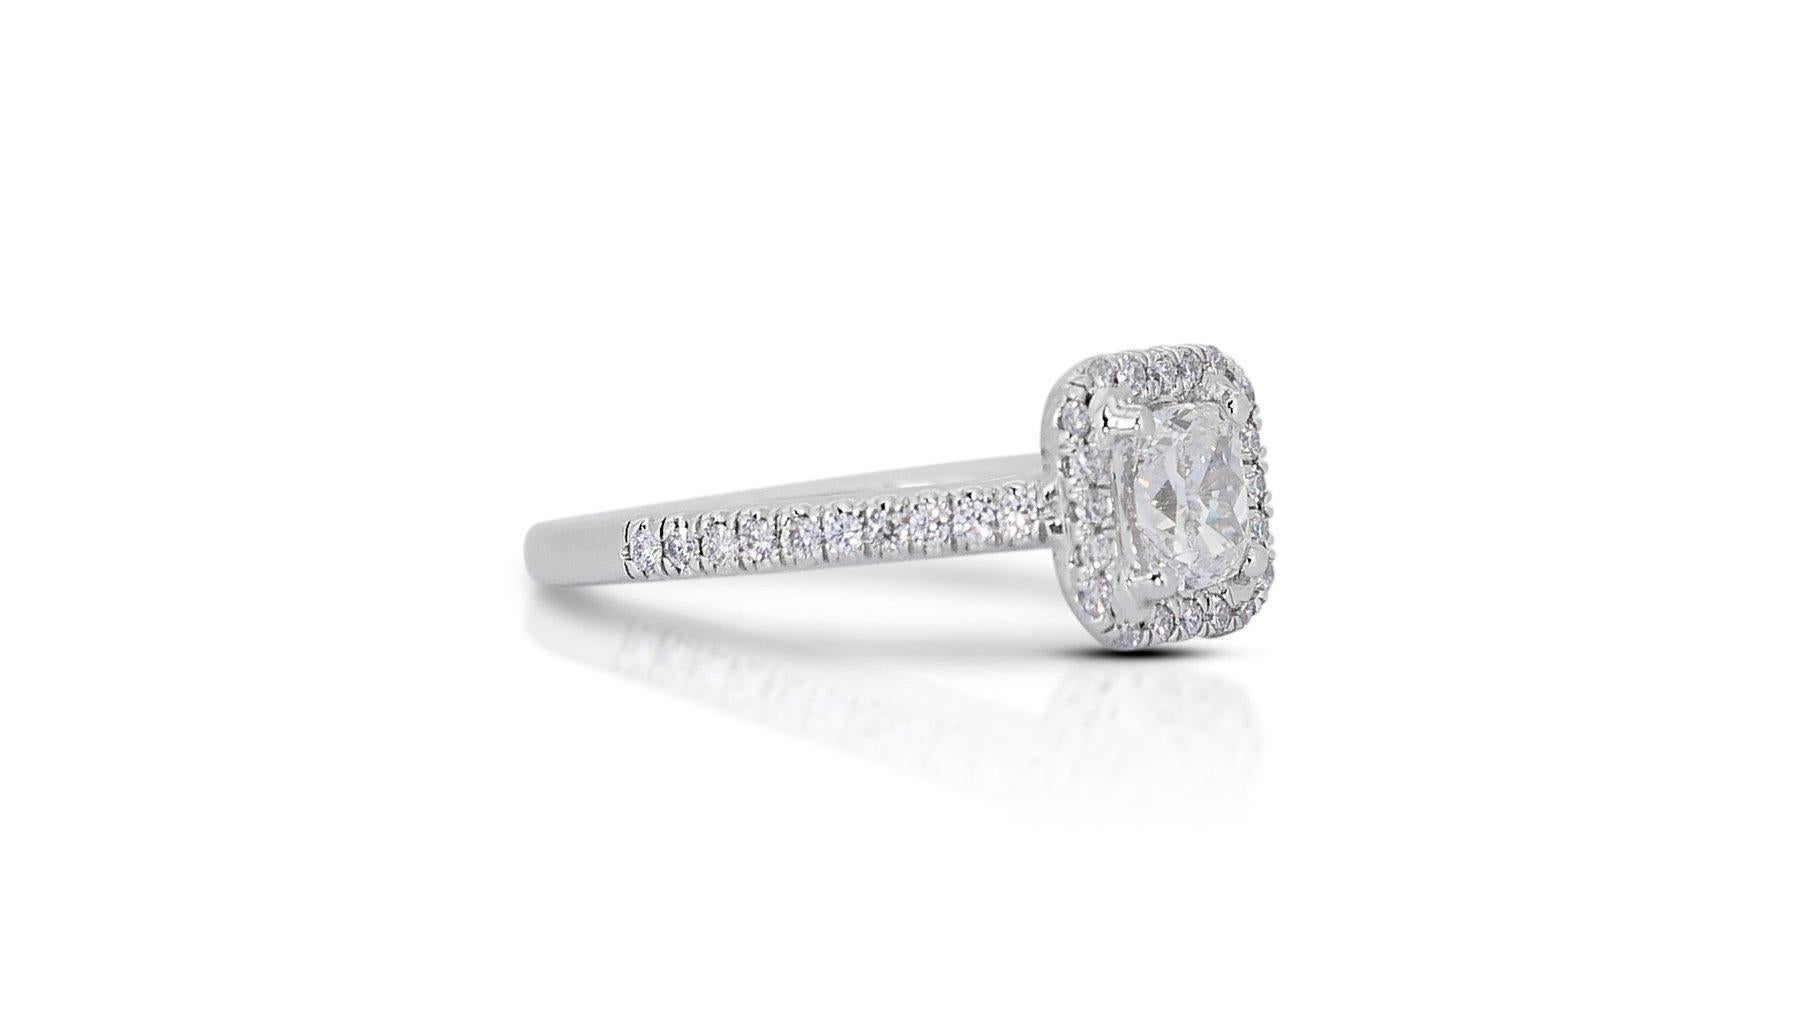 Majestic 1,71ct Diamond Halo Ring in 18k Weißgold - GIA zertifiziert

Dieser atemberaubende Diamant-Halo-Ring ist mit einem Diamanten im Kissenschliff von 1,11 Karat besetzt. Daneben funkeln 40 Diamanten im runden Brillantschliff mit einem